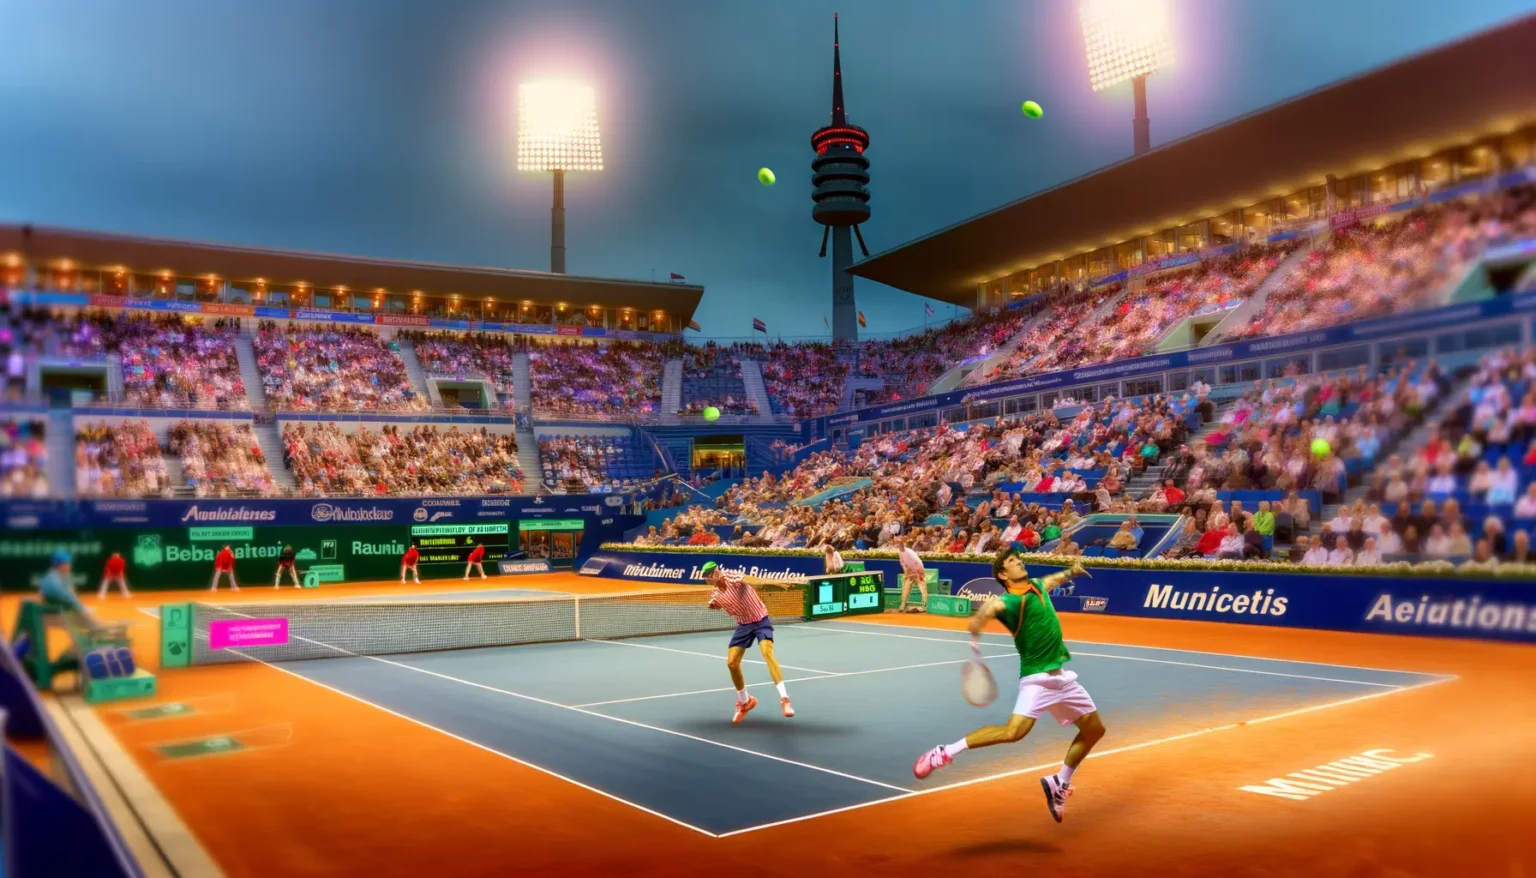 Professionelles Tennisspiel bei Abenddämmerung auf einem orangefarbenen Sandplatz in einem großen Stadion, das von einem enthusiastischen Publikum gefüllt ist, mit zwei Spielern in Aktion, während einer sich auf einen Schlag vorbereitet. Im Hintergrund ragt ein Turm mit beleuchteter Spitze in den Himmel.